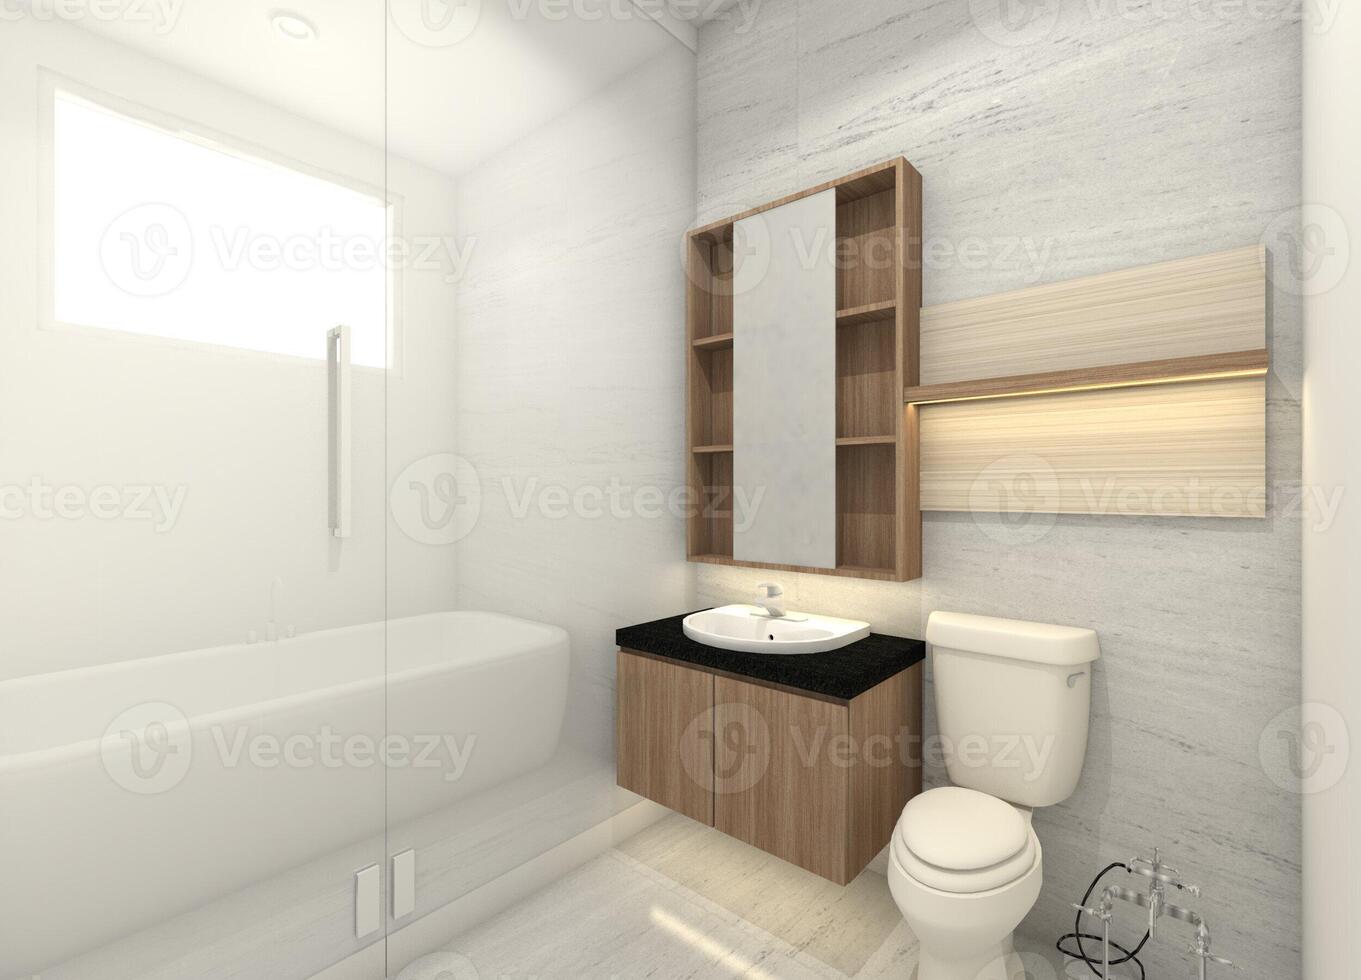 moderno y minimalista baño con ducha, baño zona y lavar mano gabinete, 3d ilustración foto